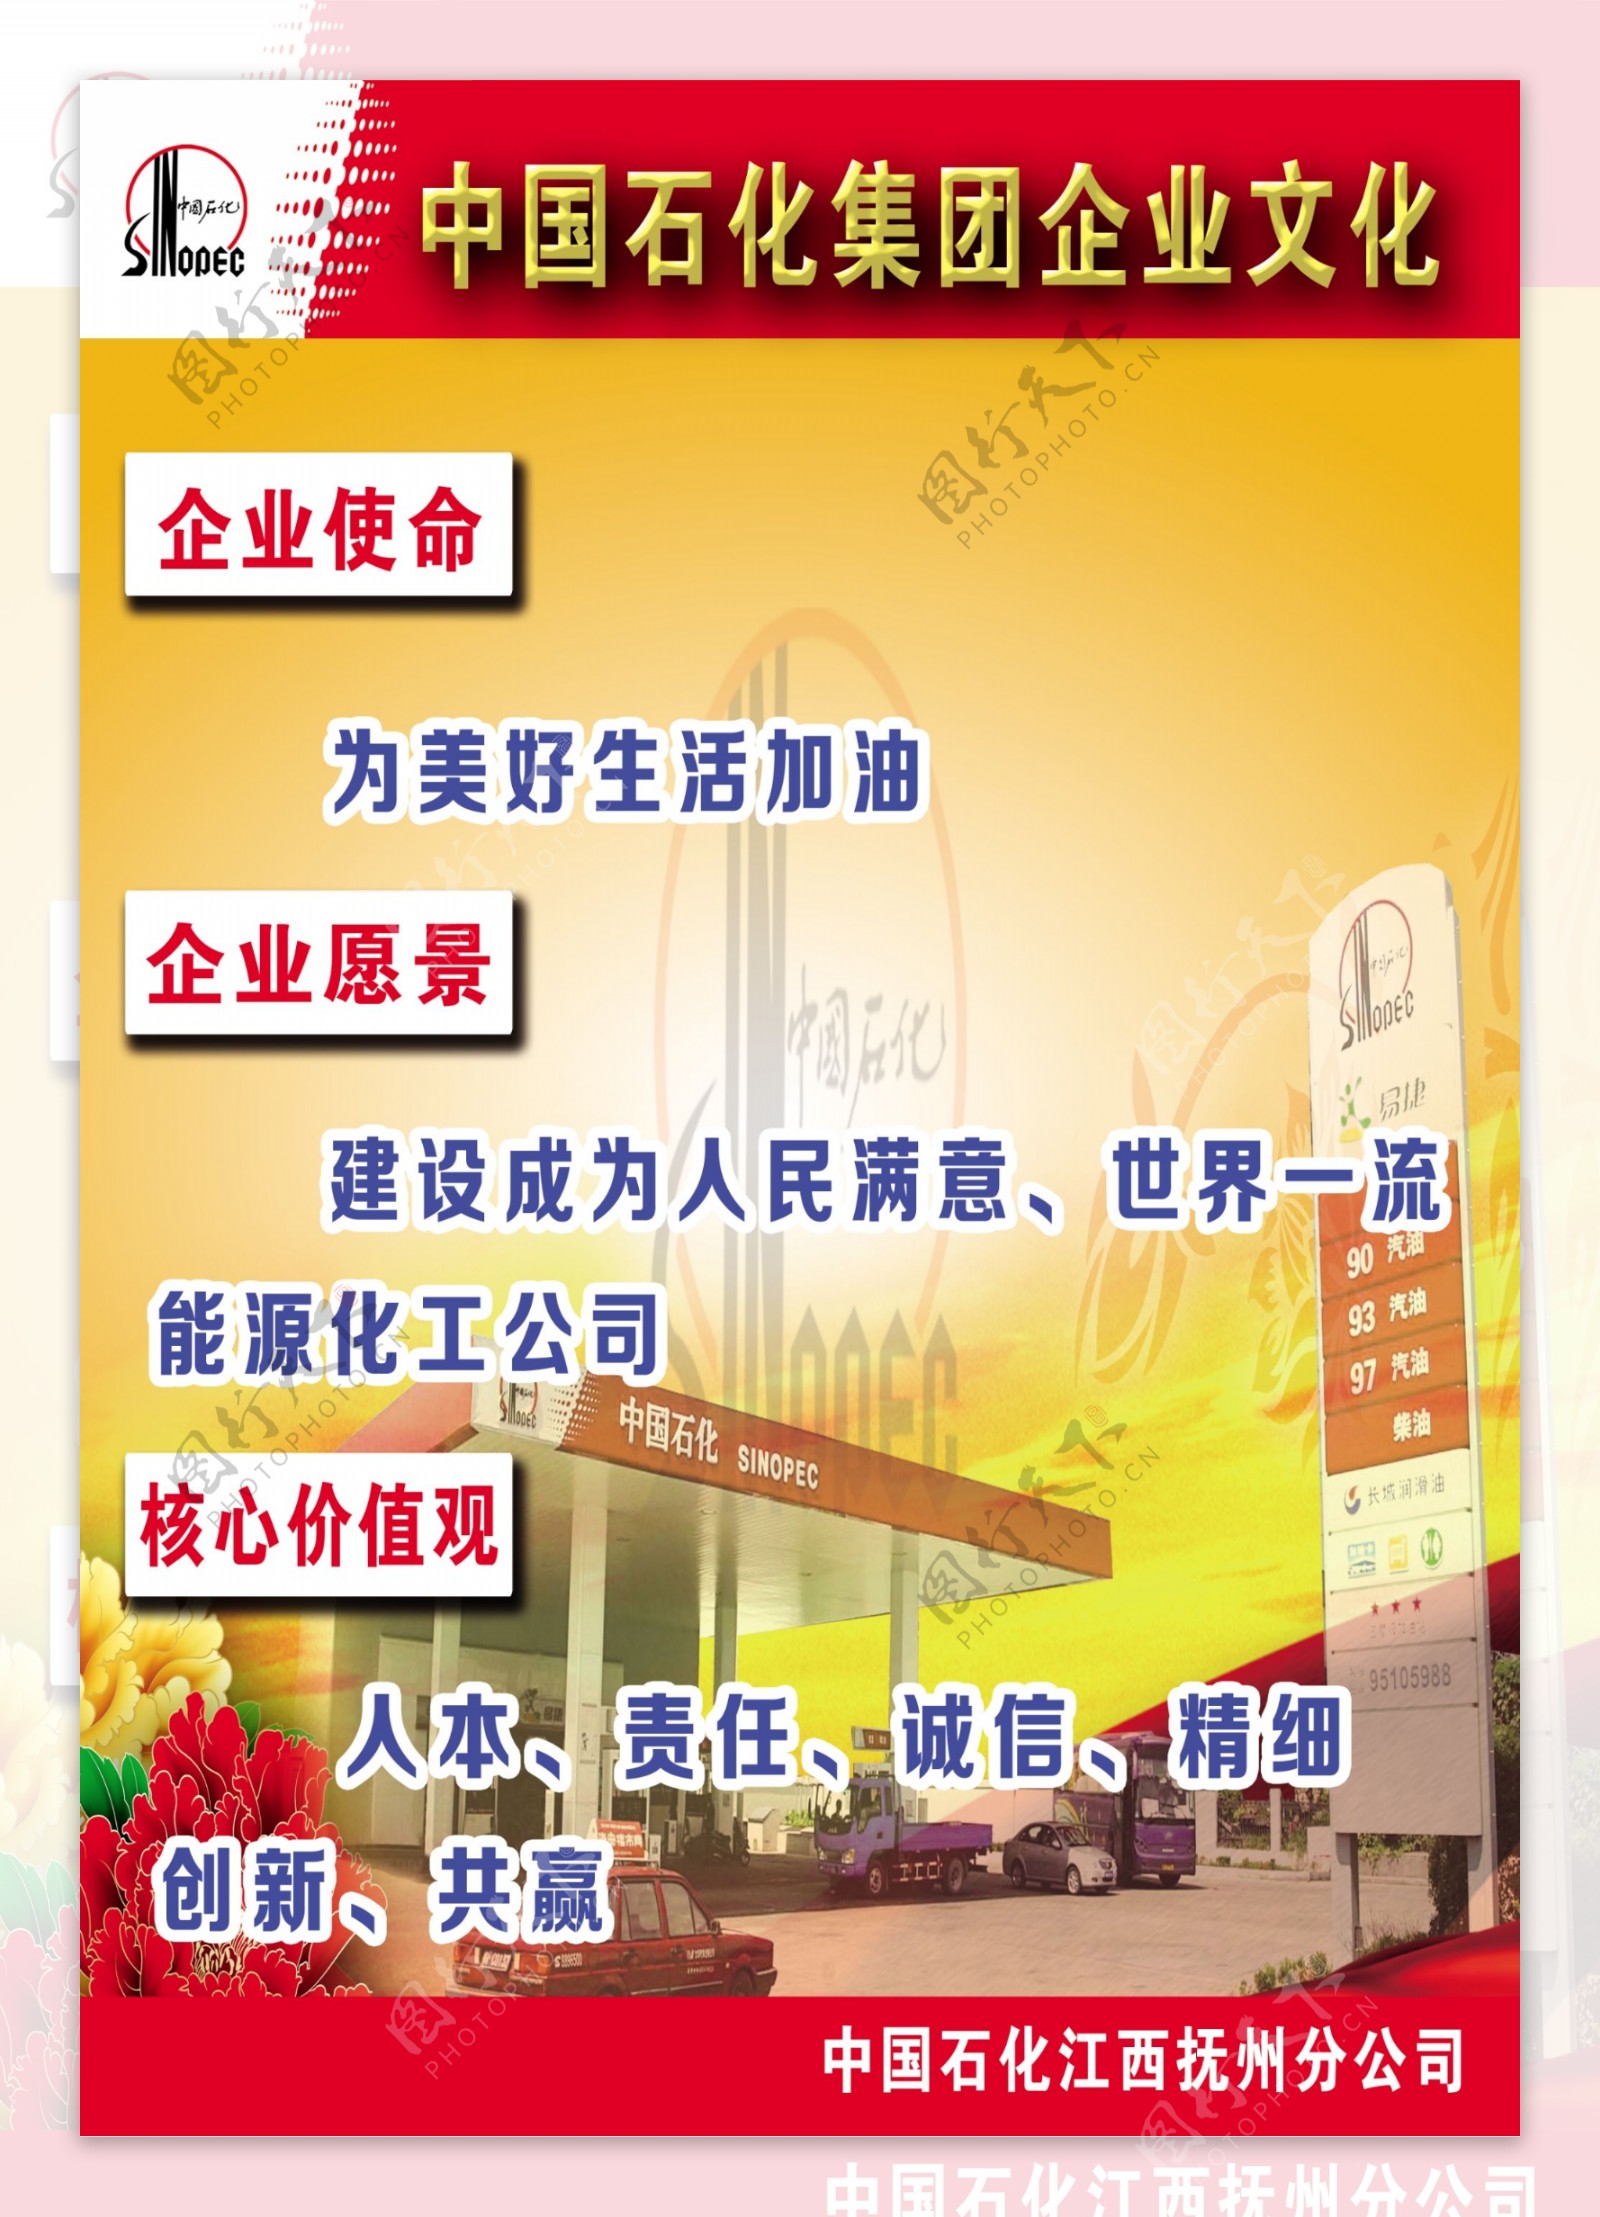 中国石化集团企业文化加油站图片